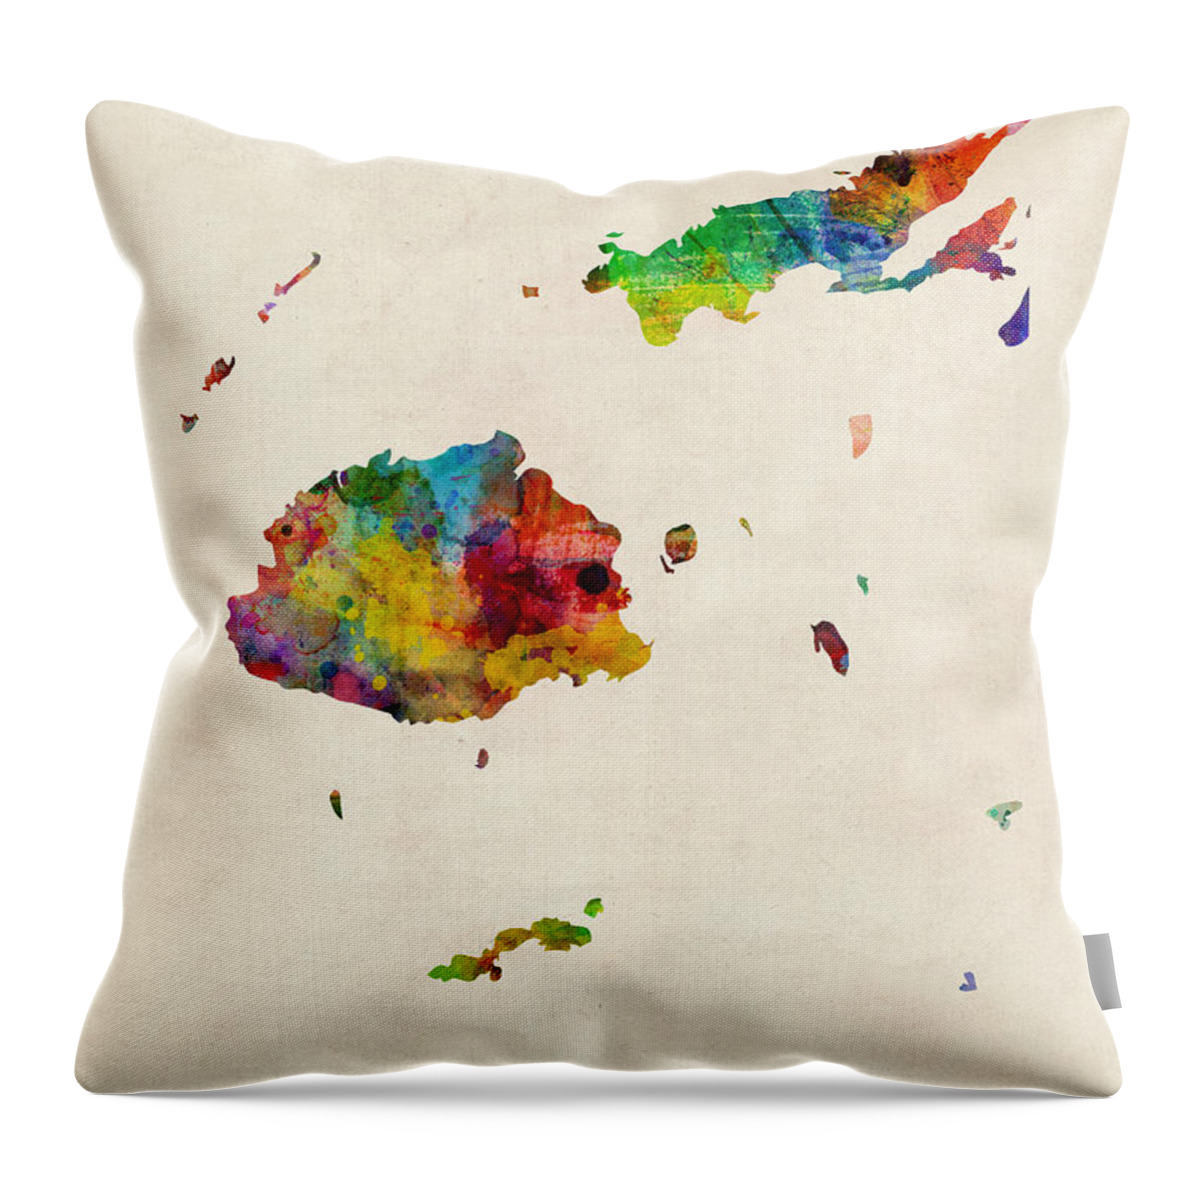 Map Art Throw Pillow featuring the digital art Fiji Watercolor Map by Michael Tompsett